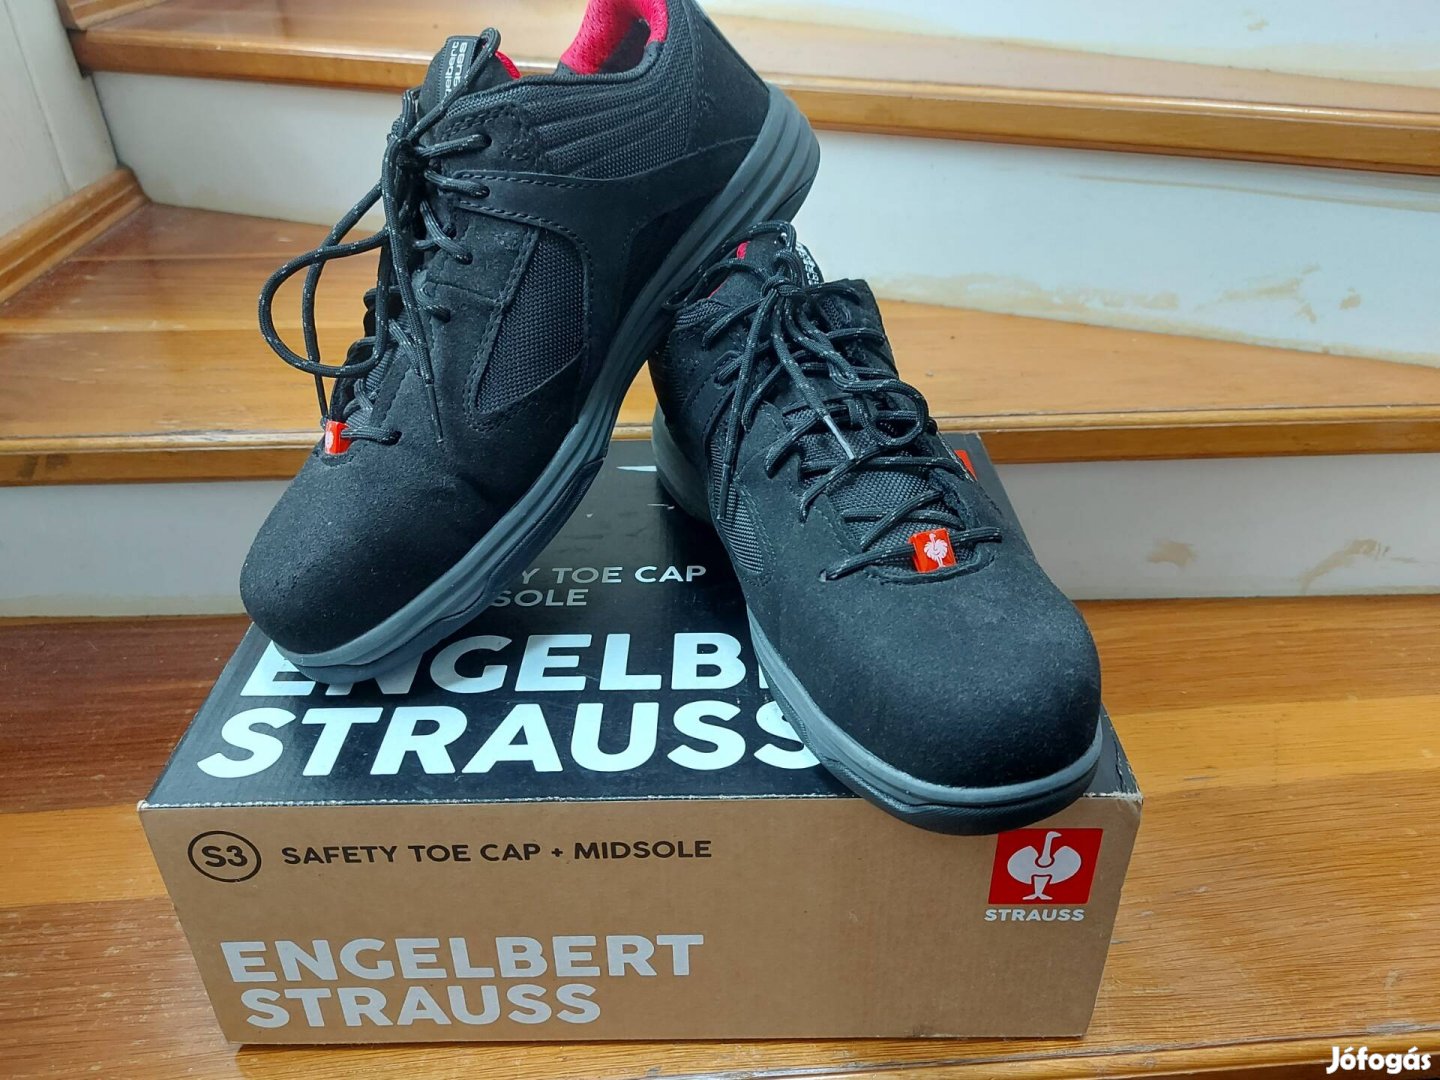 Új Engelbert strauss munkavédelmi cipő eladó